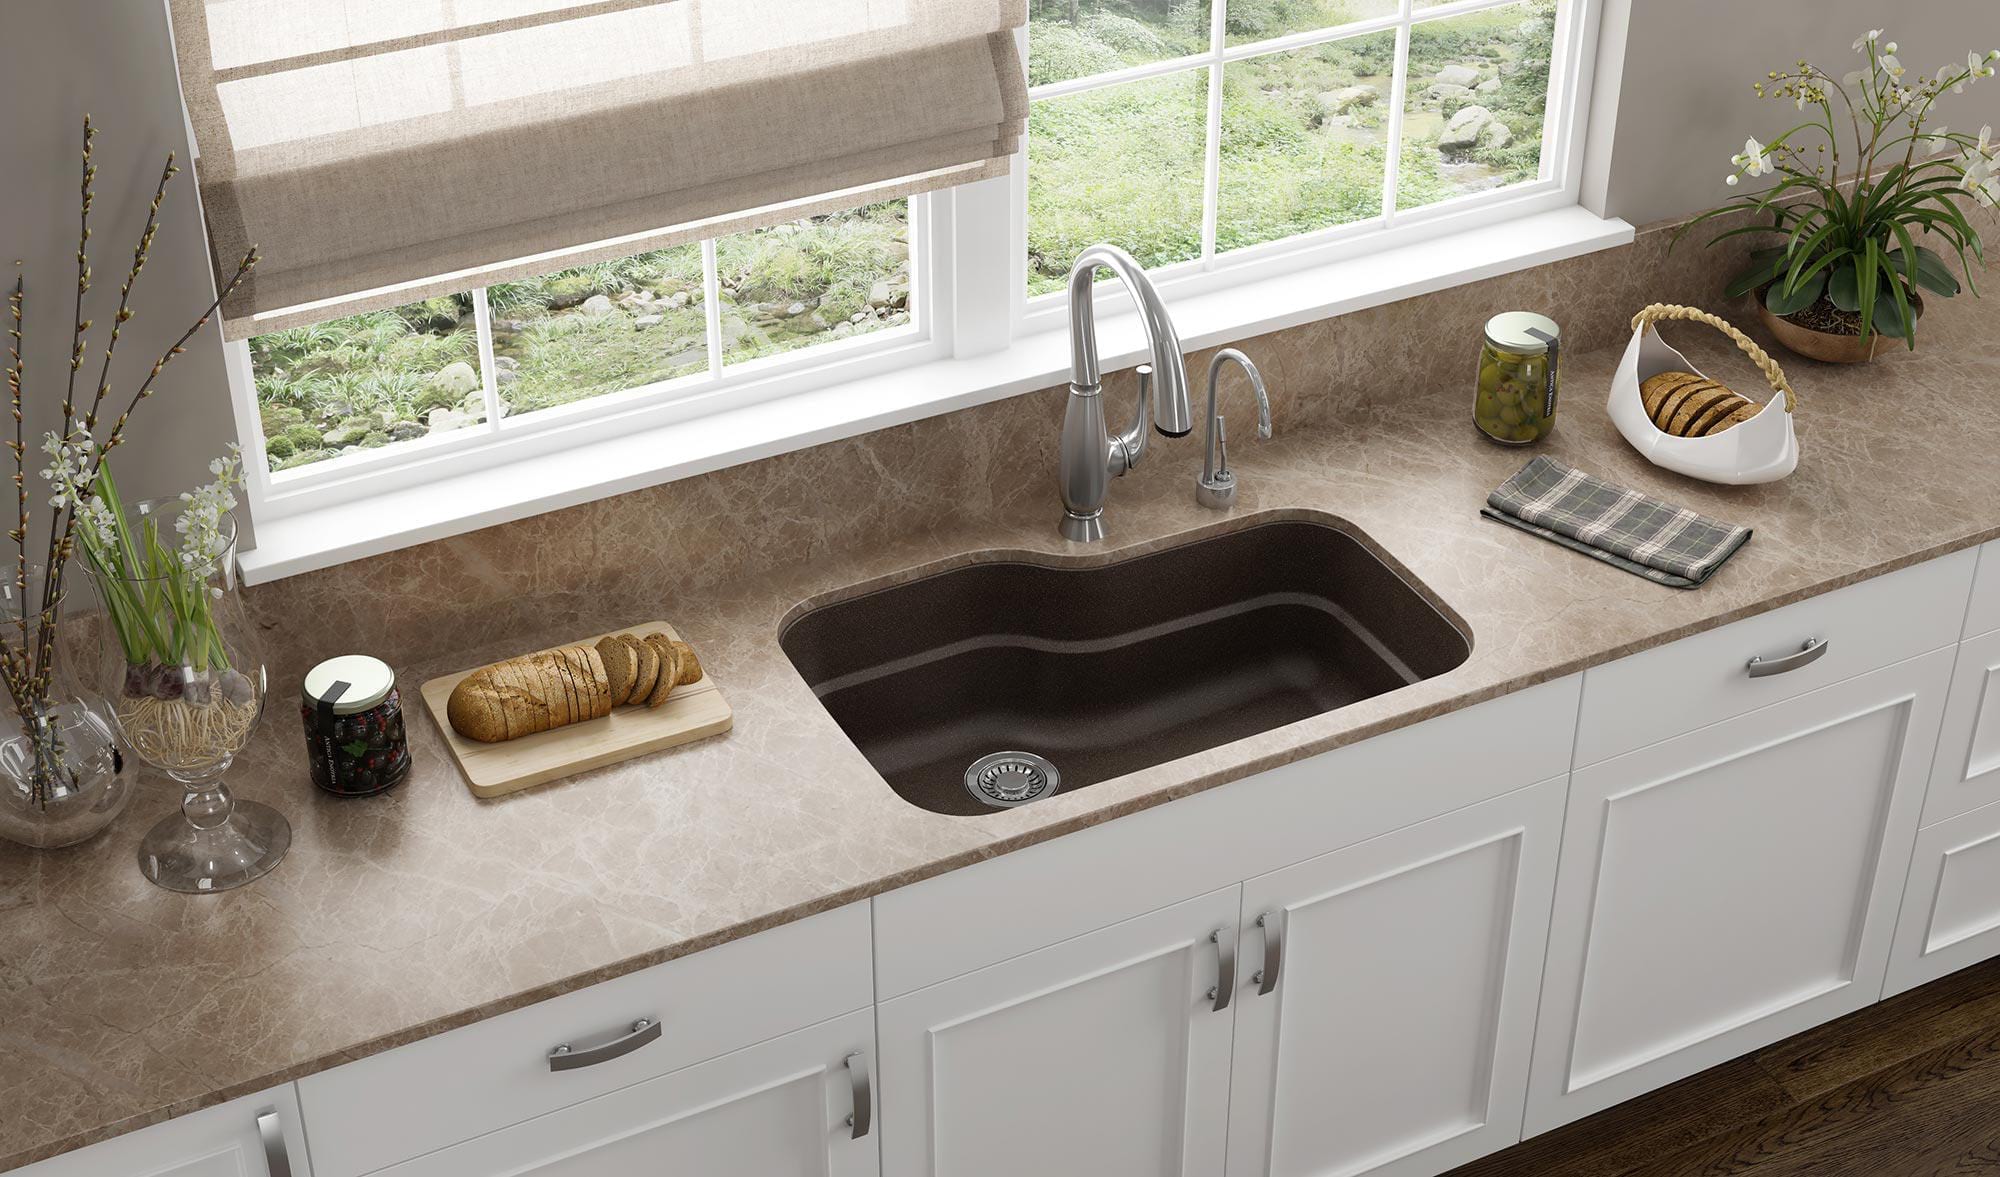 e granite kitchen sink